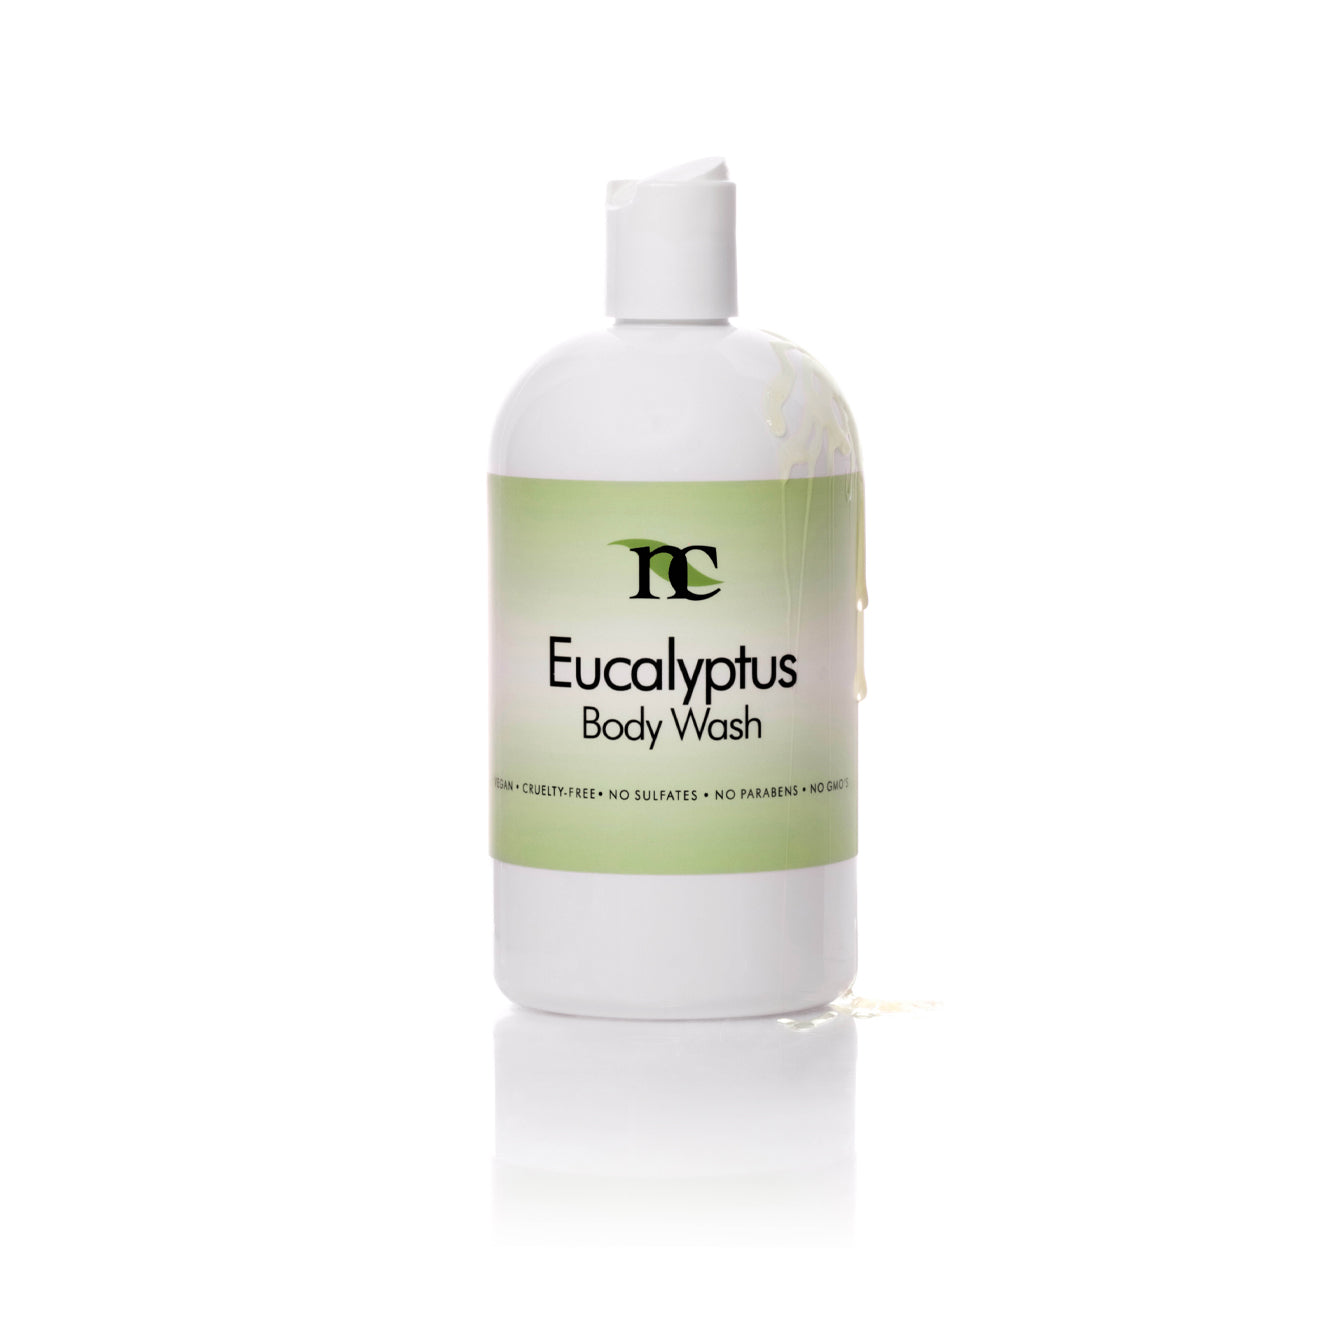 Eucalyptus Body Wash product photo on white background 